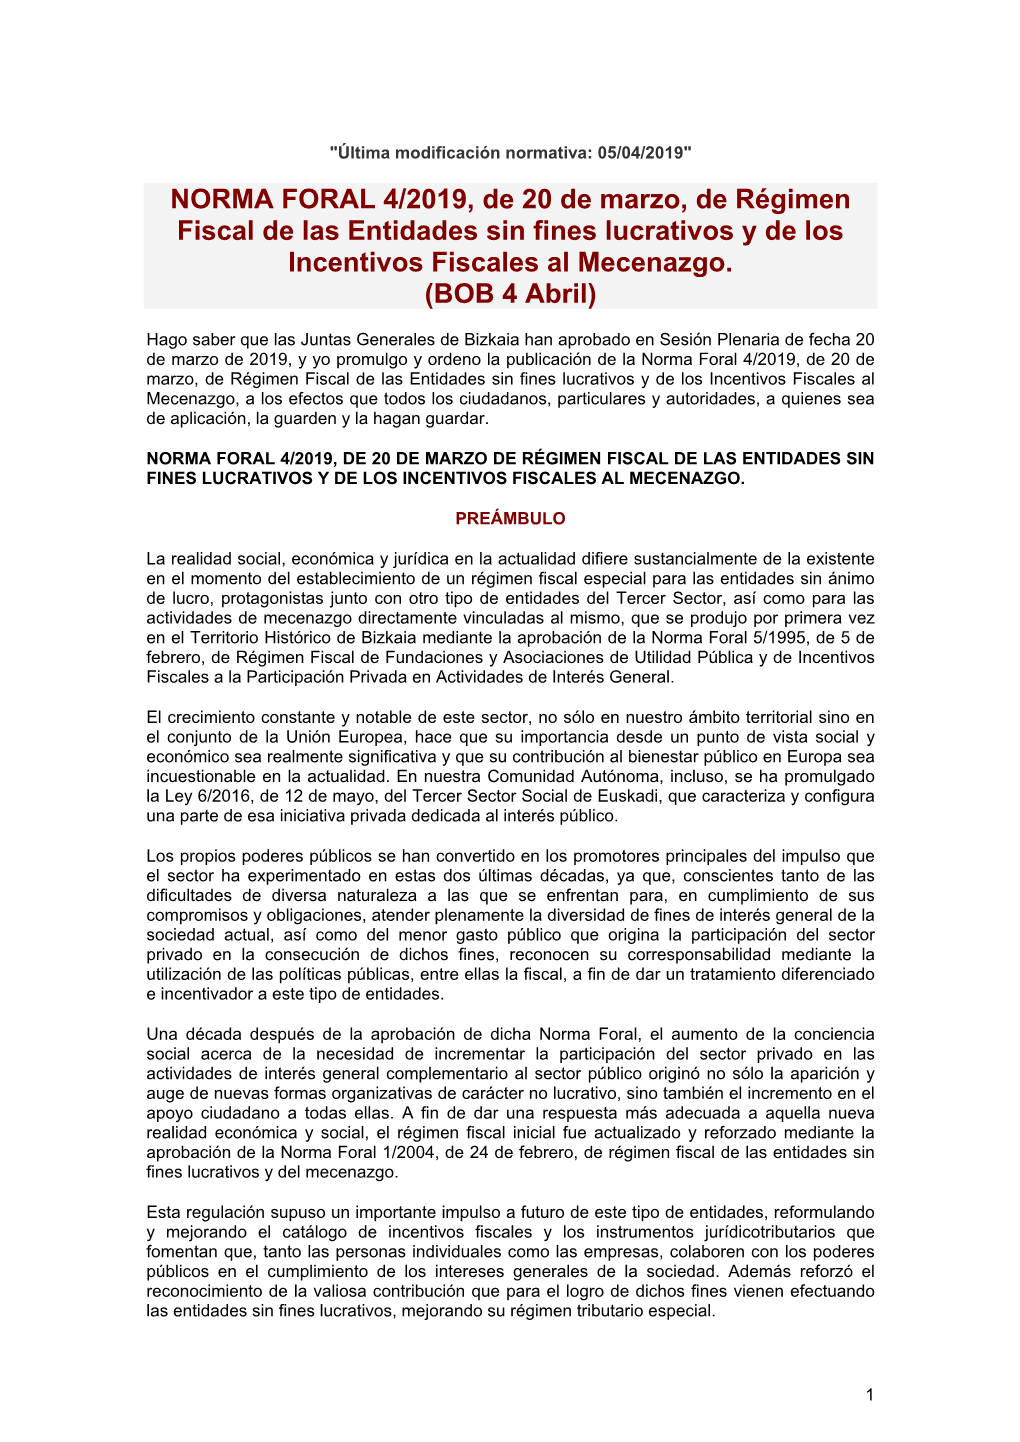 NORMA FORAL 4/2019, De 20 De Marzo, De Régimen Fiscal De Las Entidades Sin Fines Lucrativos Y De Los Incentivos Fiscales Al Mecenazgo